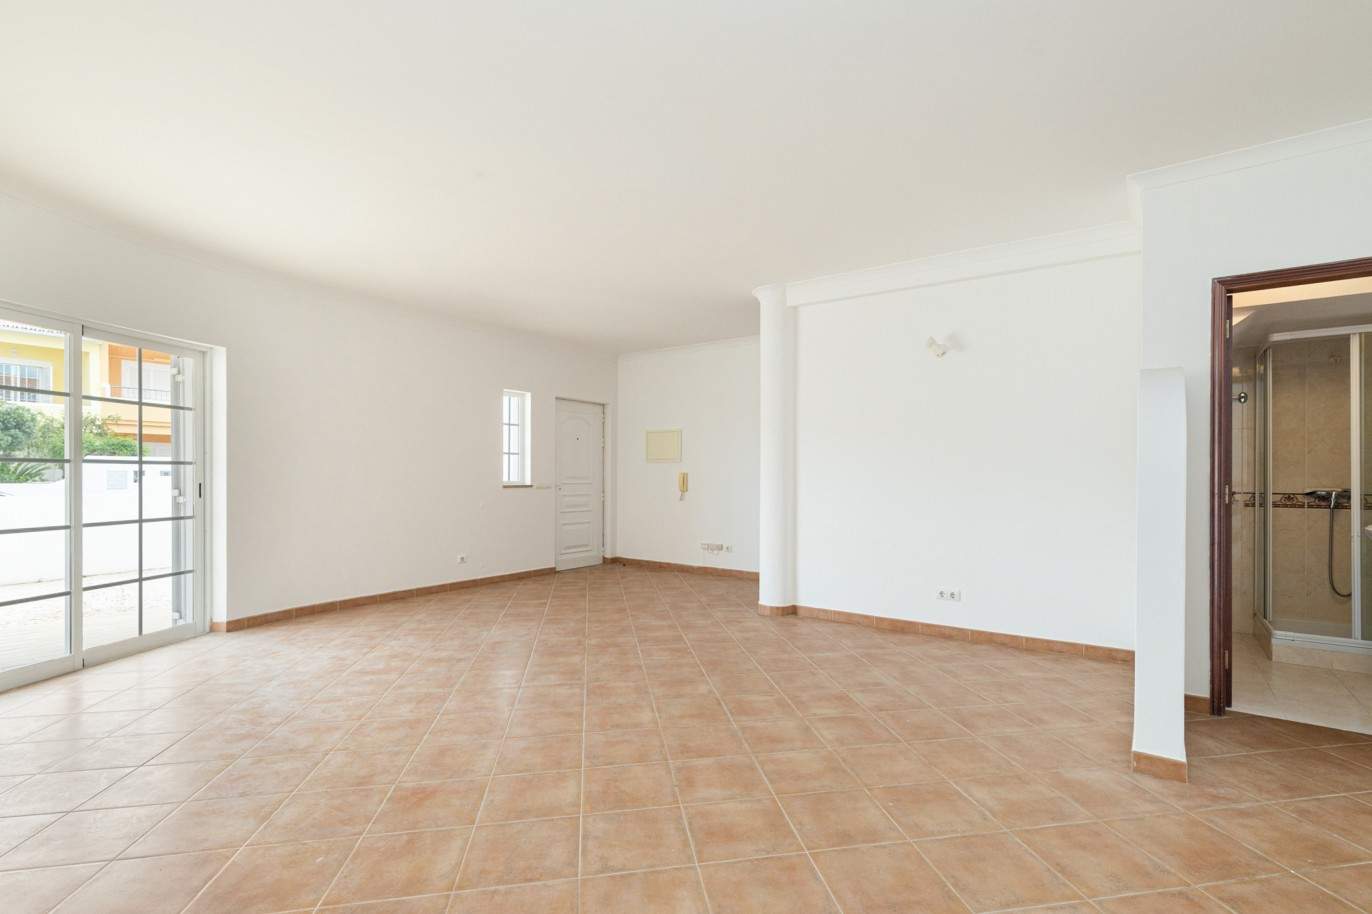 Villa de 3 dormitorios en venta en Porto de Mós, Lagos, Algarve_201765